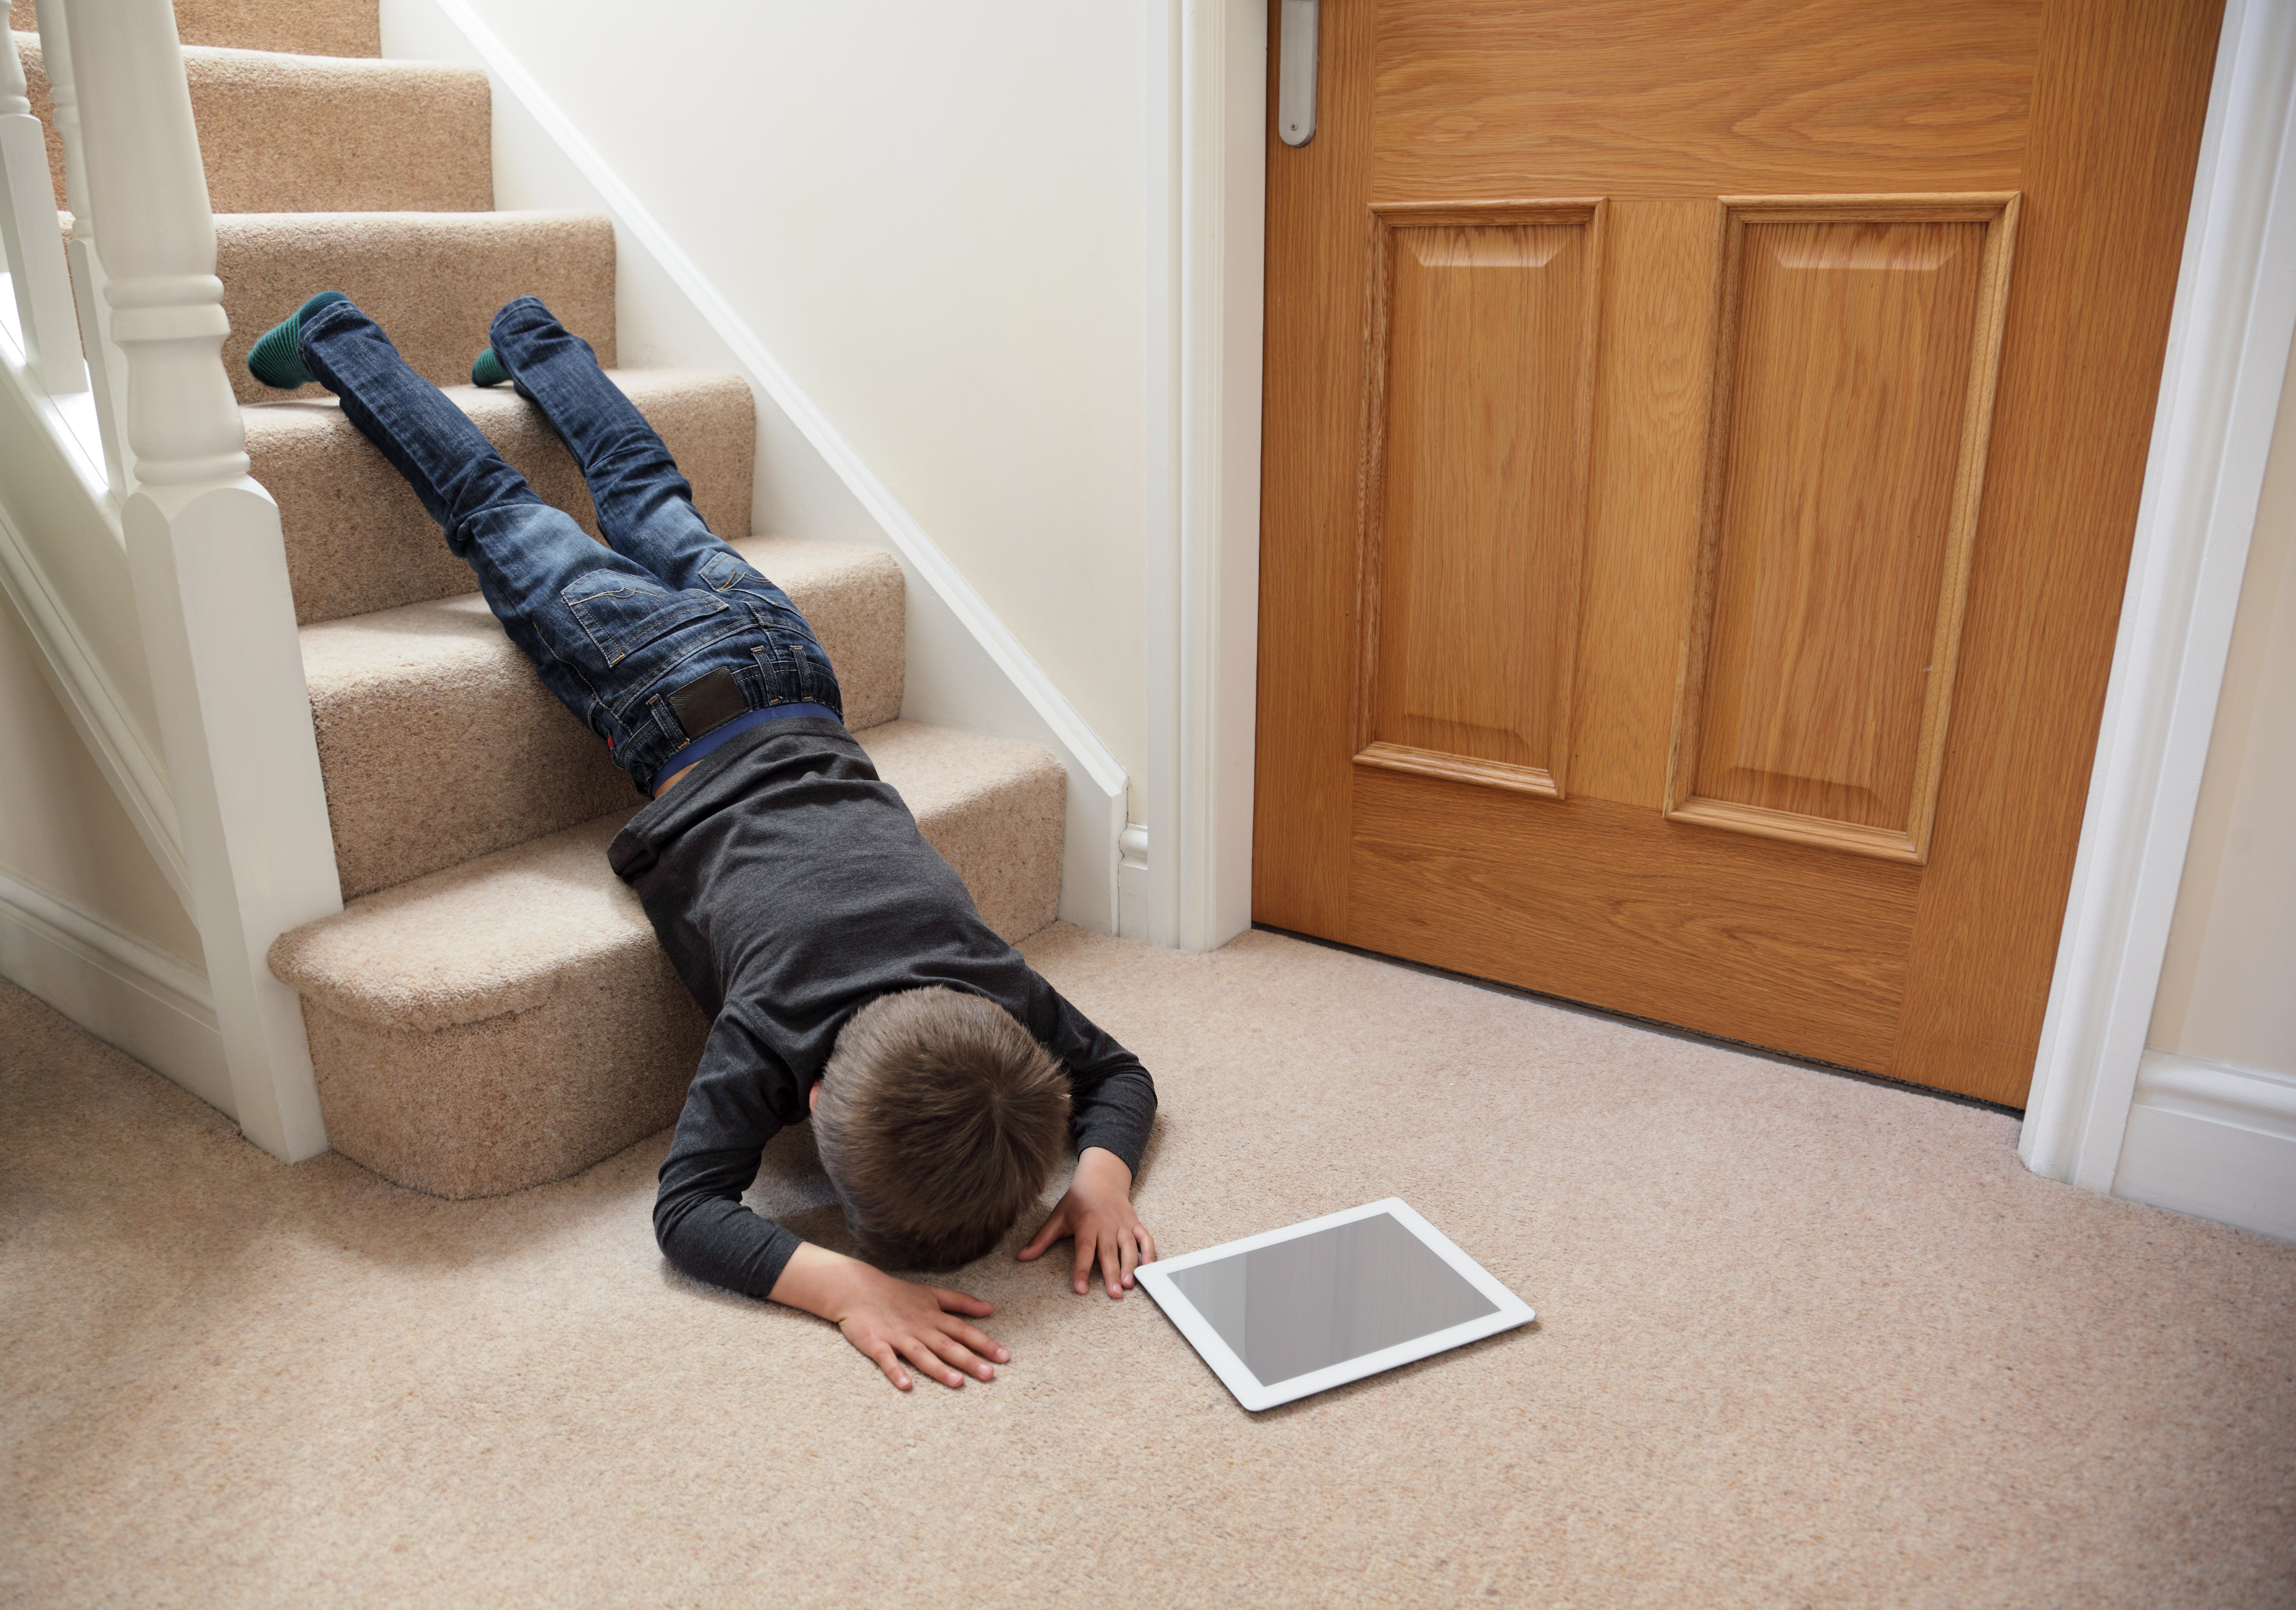 Звук падения на пол. Мальчик падает с лестницы. Человек оступился на лестнице.